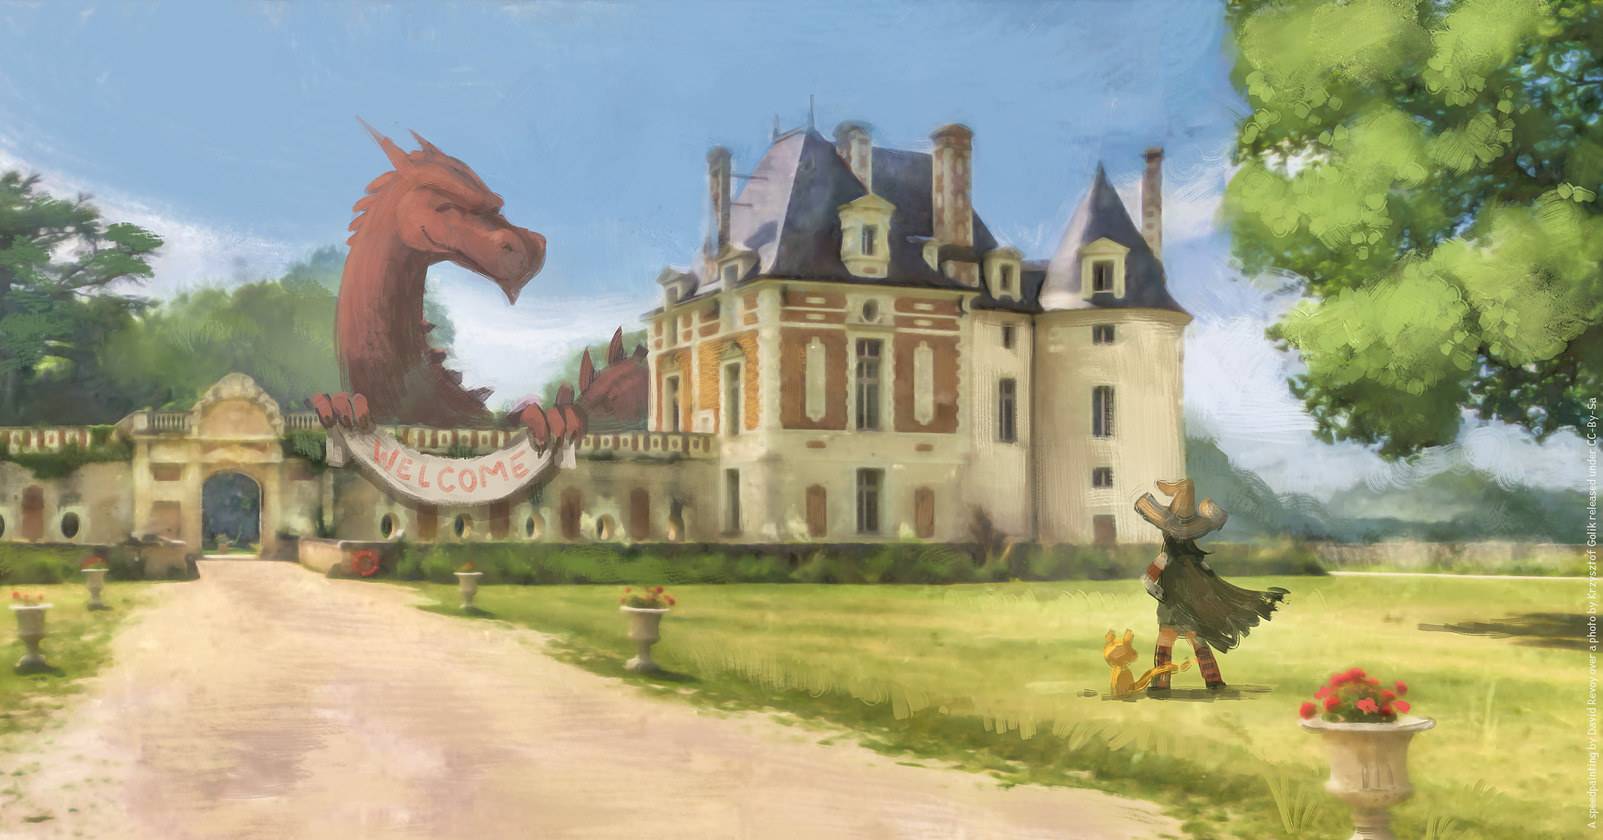 Dessin représentant le château de Selles-sur-Cher avec un dragon dedans tenant une bannière « Welcome »